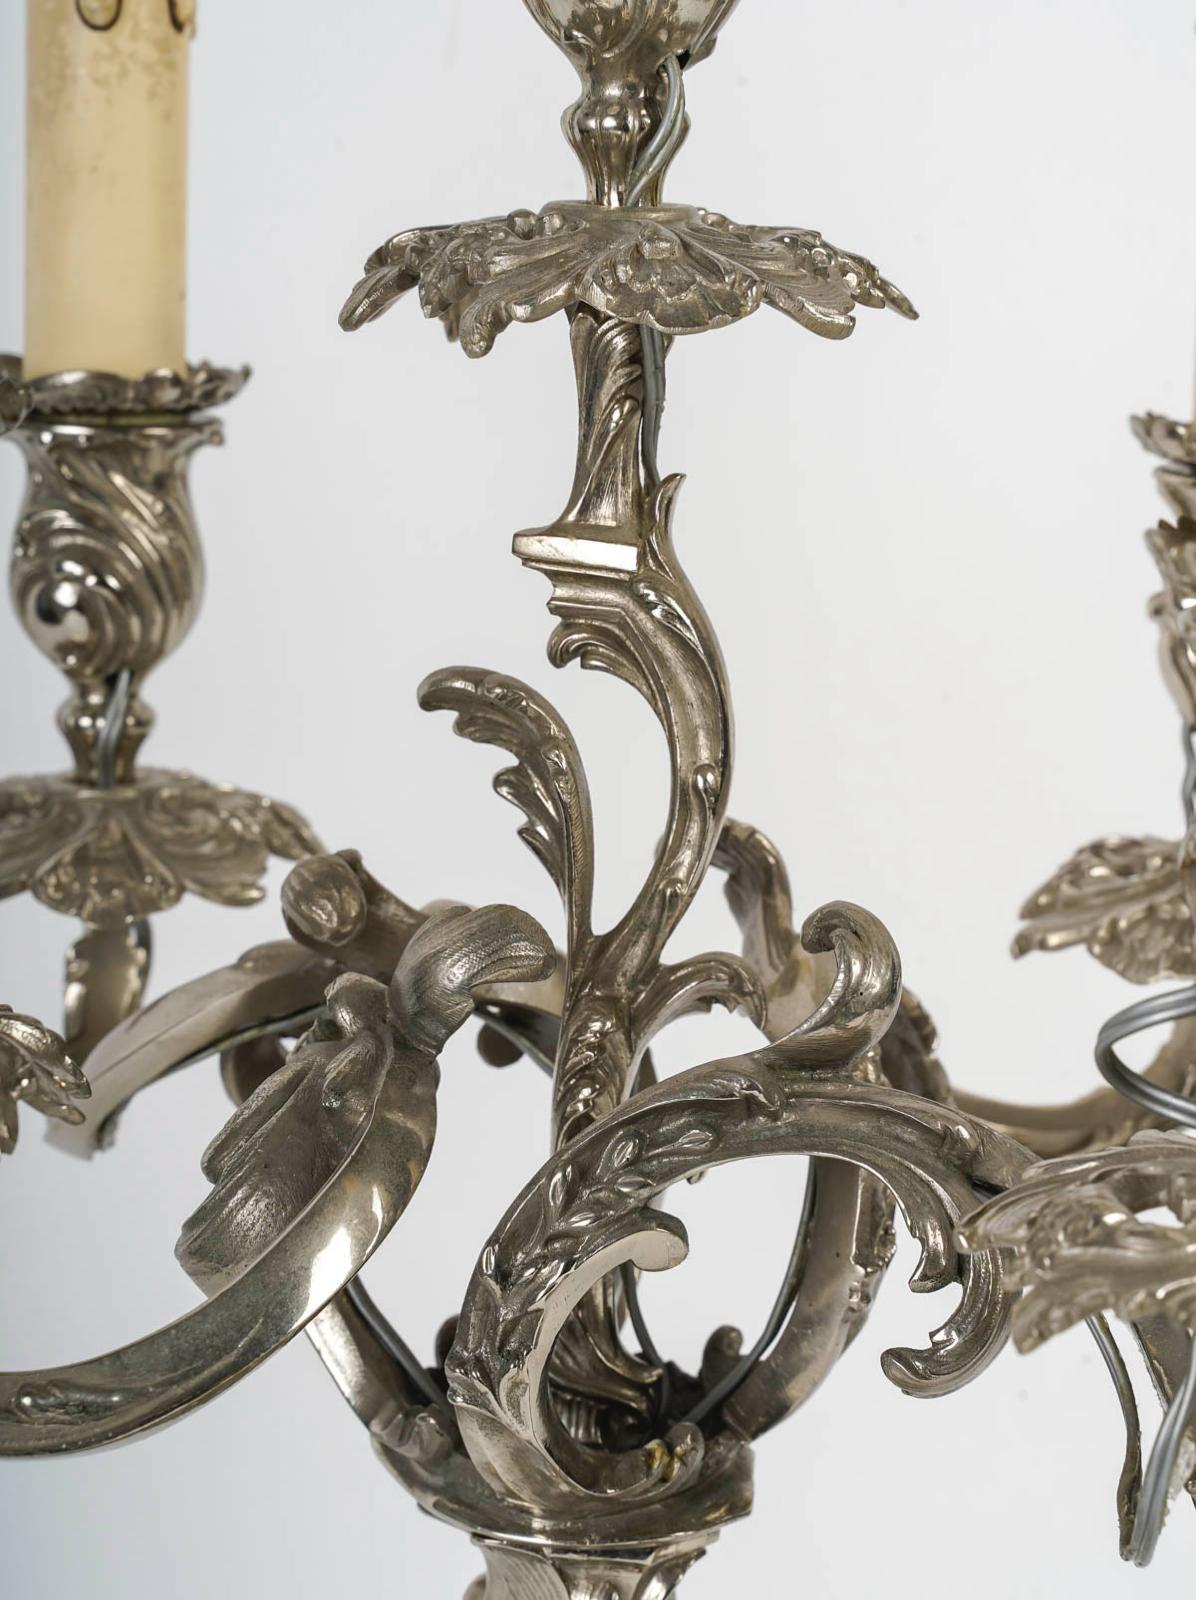 Paar versilberte Bronzeleuchter im Louis-XV-Stil, 19. Jahrhundert.

Ein Paar versilberte Bronzekandelaber im Louis XV-Stil, elektrisch montiert, jeder mit 5 Armen.
h: 50cm, T: 33cm